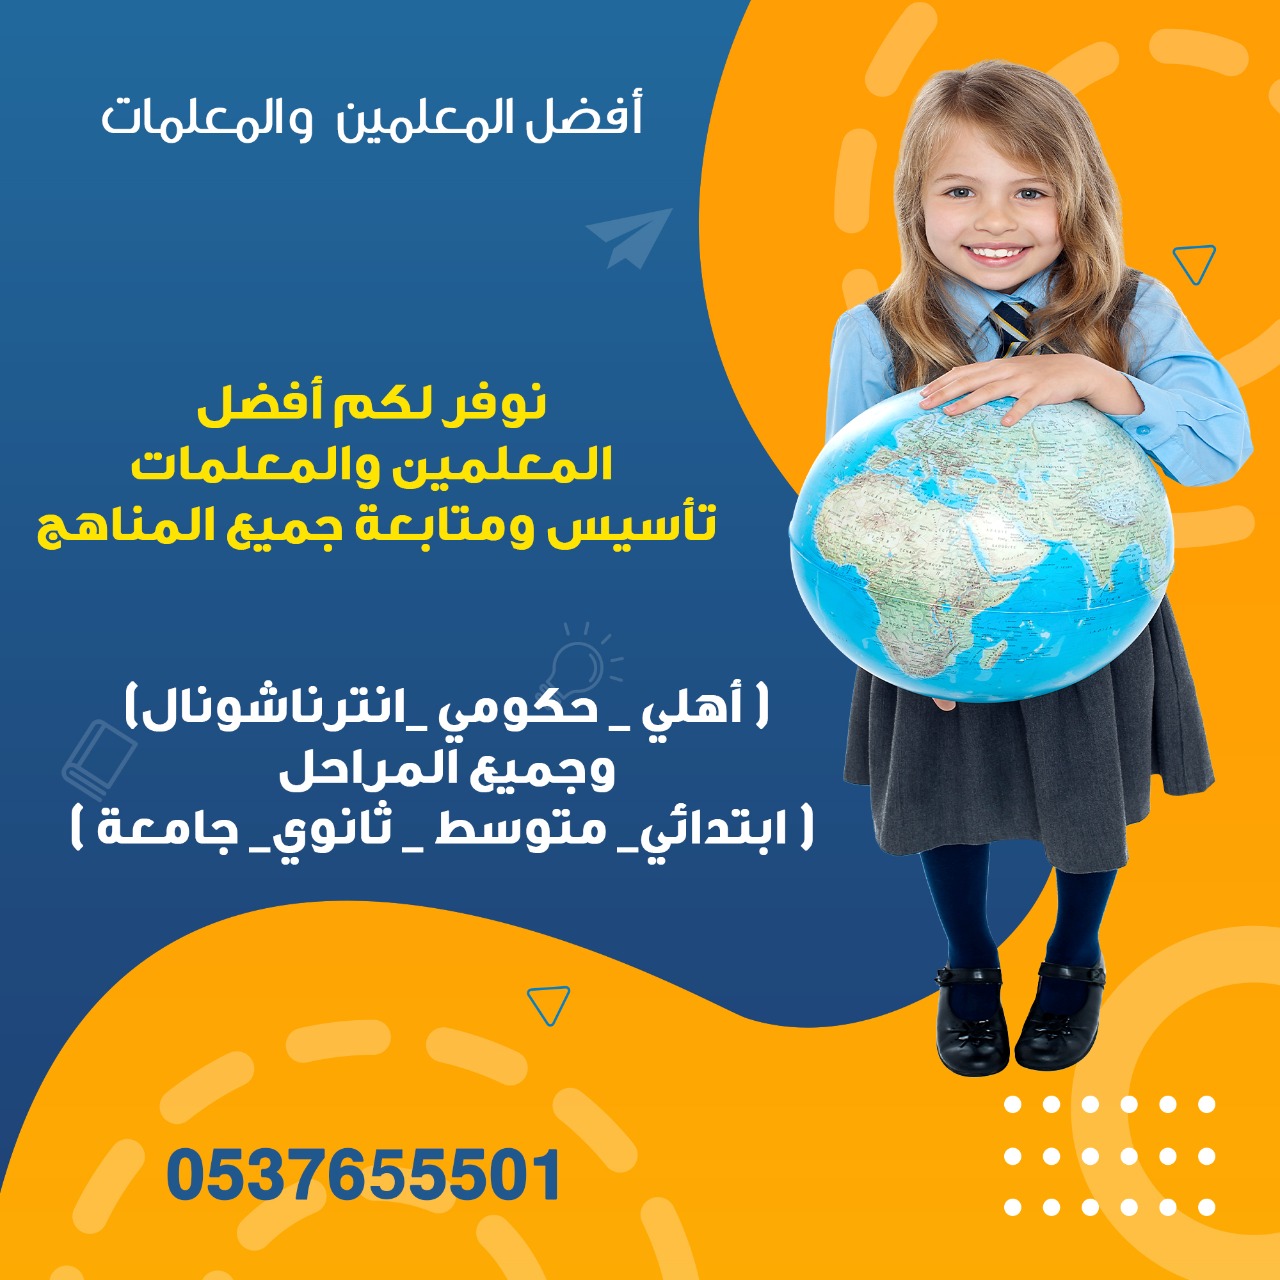 معلمة ومدرسة تأسيس ومتابعة انجليزي وانترناشونال خصوصي تجي البيت بجميع احياء الرياض 